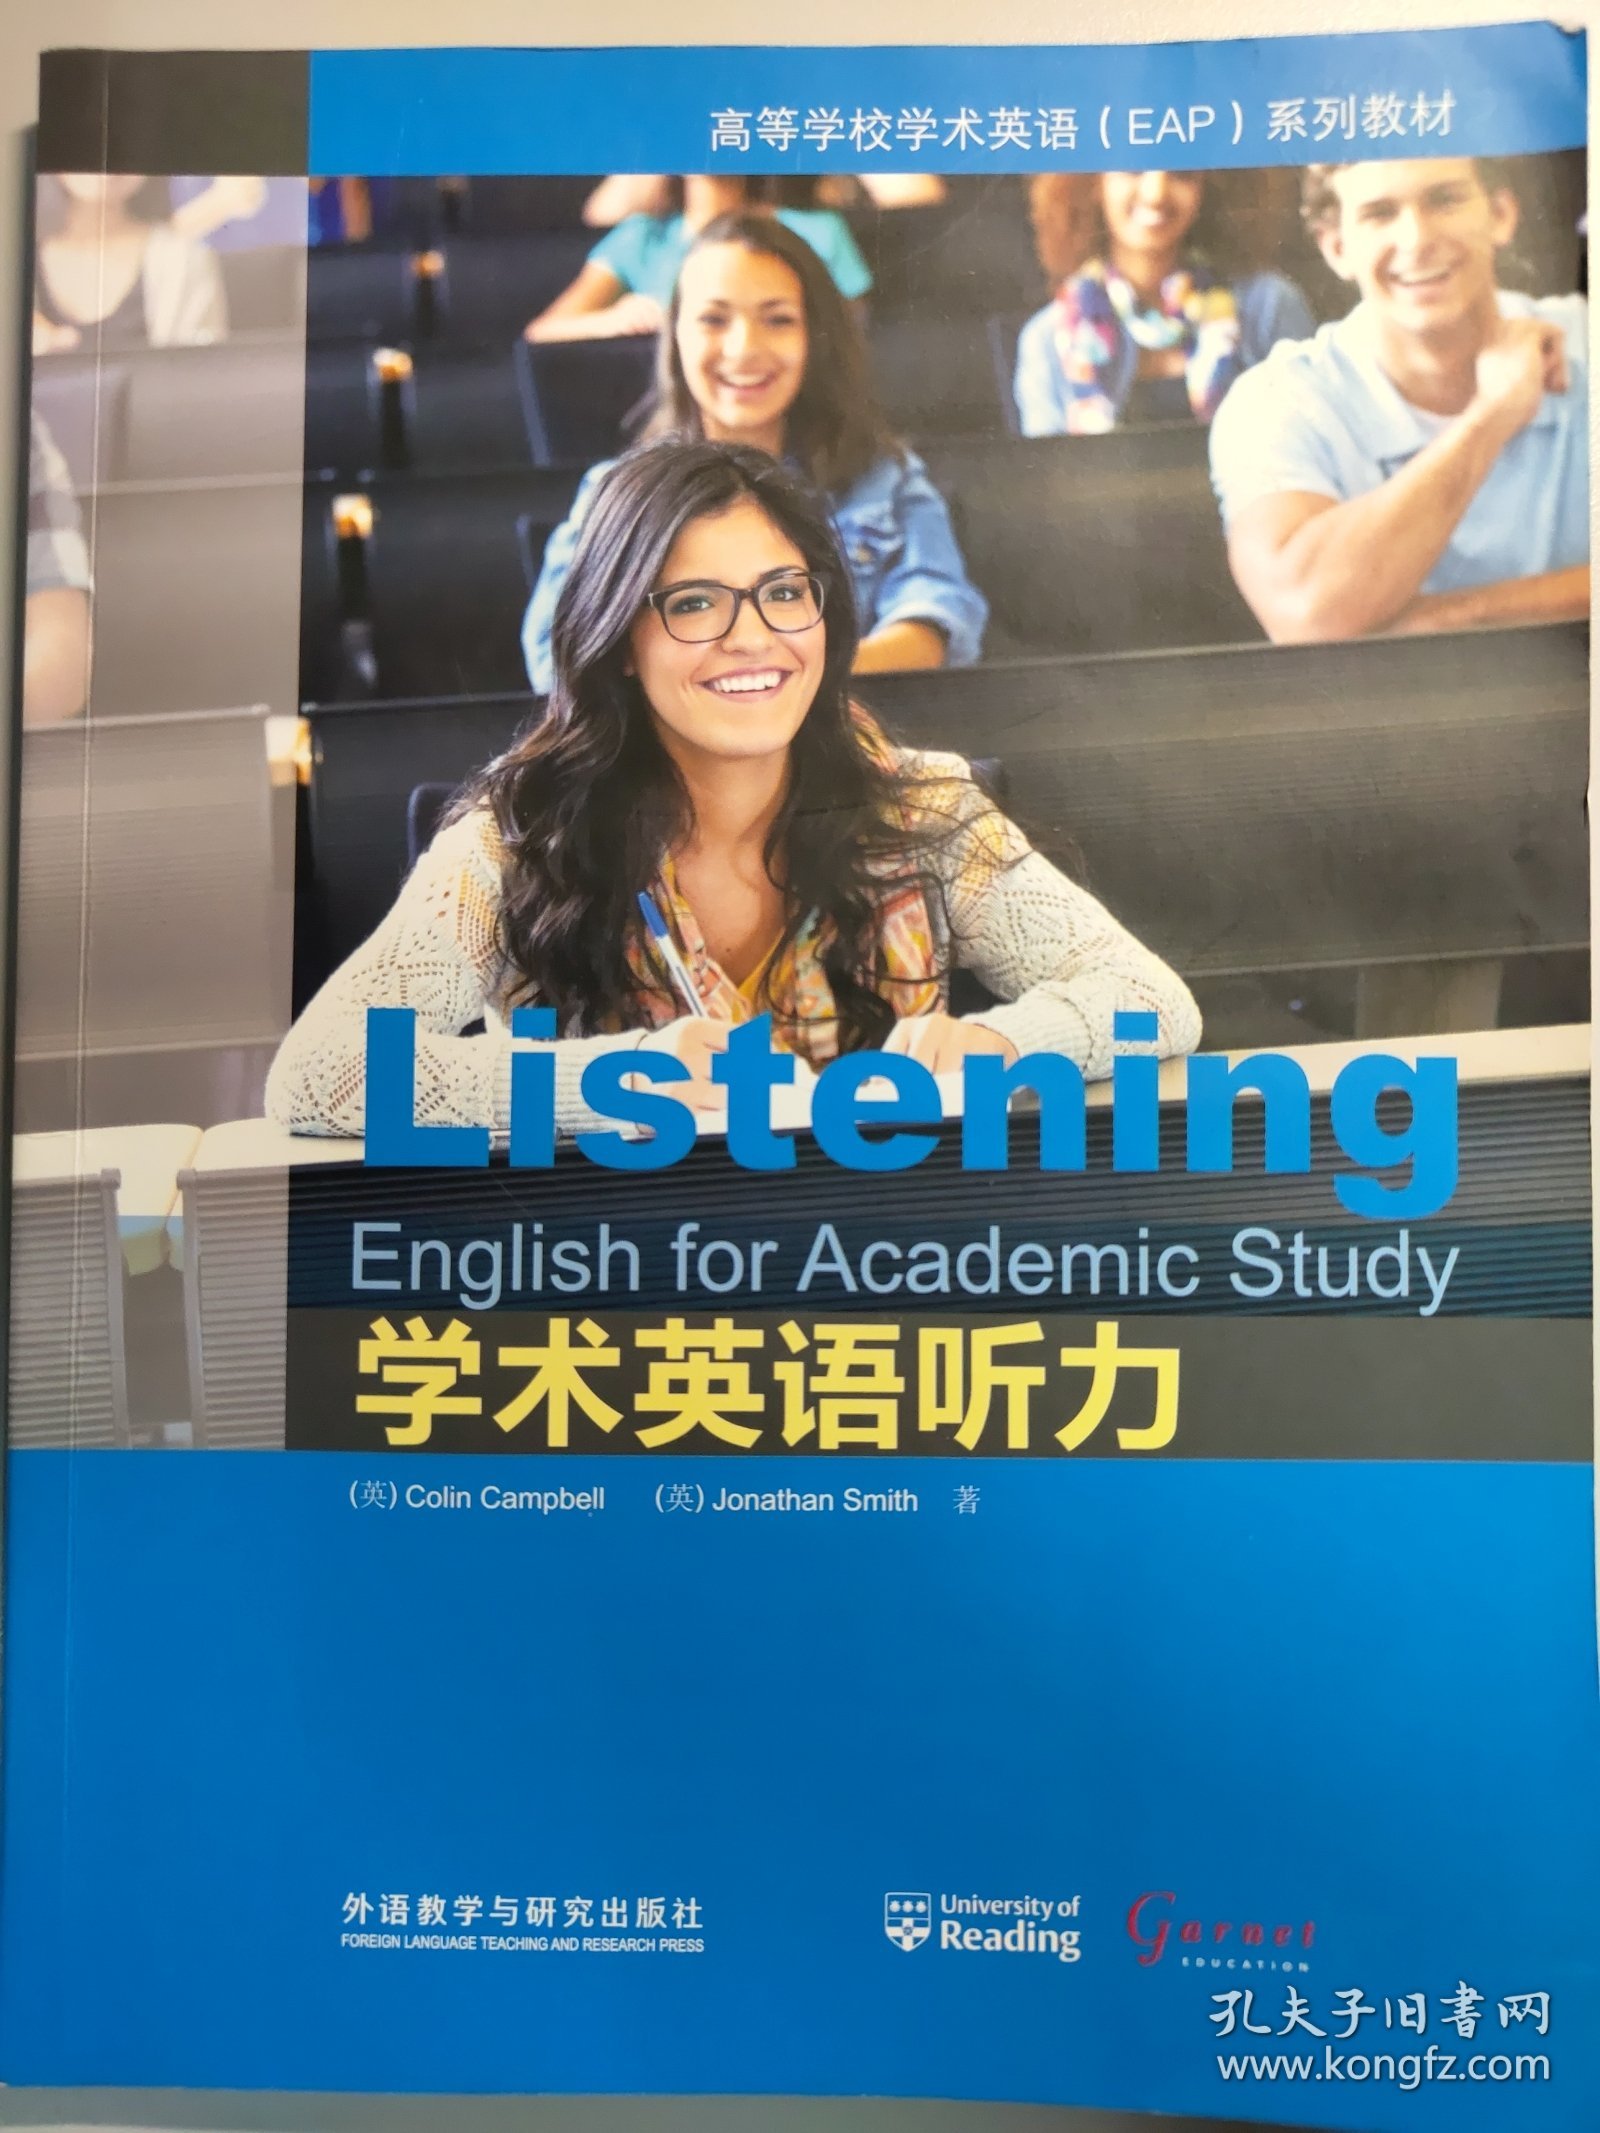 学术英语听力